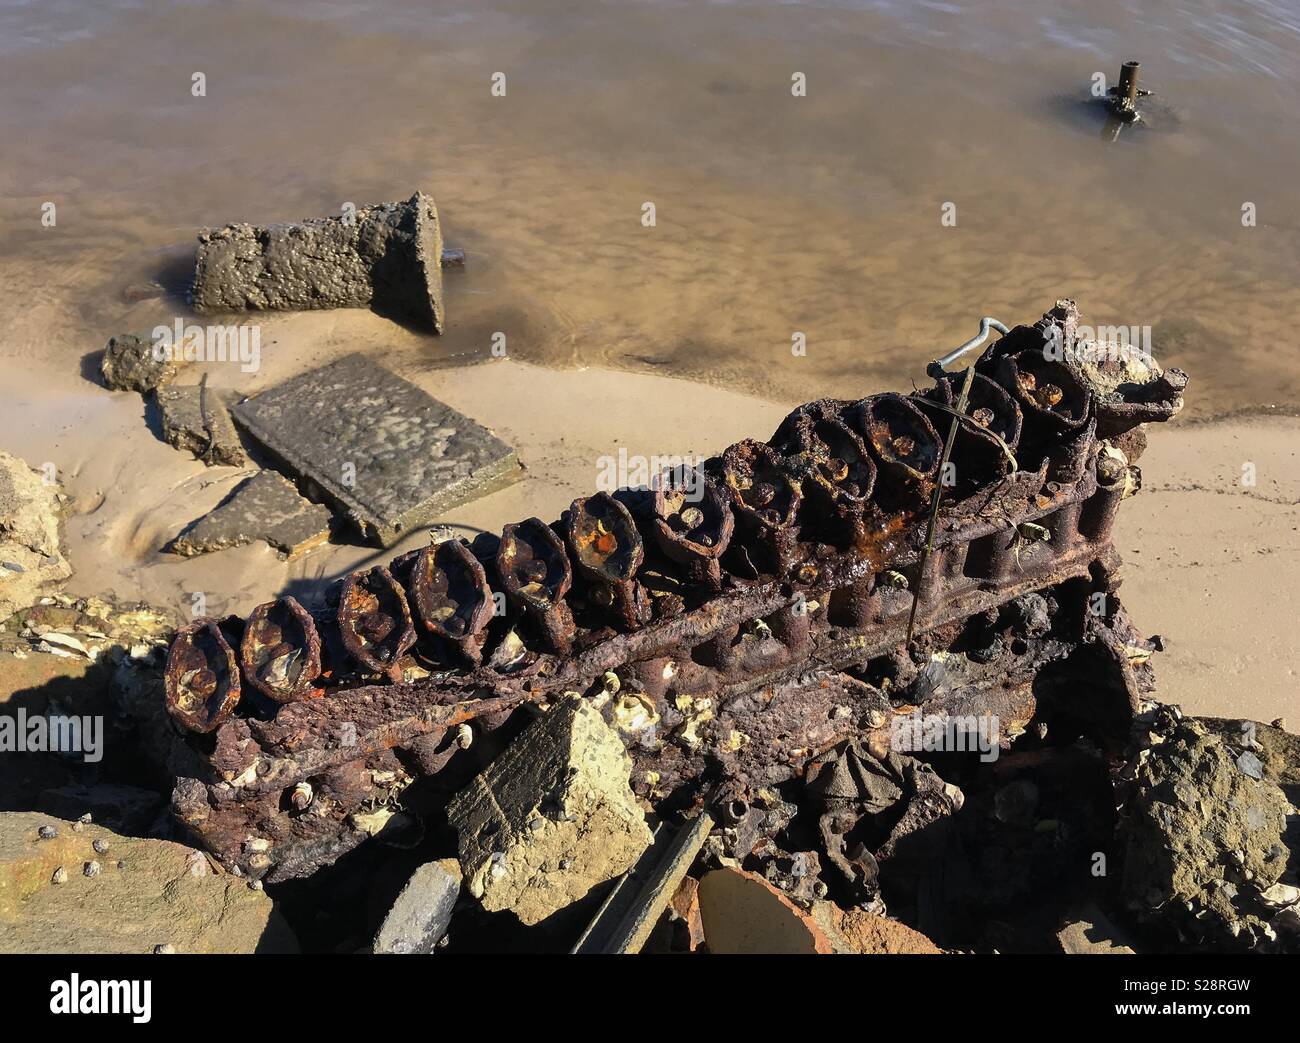 Un estremamente rusty blocco motore, giacente nella sabbia in corrispondenza del bordo di un estuario; il duro ambiente di acqua salata che mostra come la corrosione è grandemente accelerato in tale circostanza. Sicuramente un write-off! Foto Stock